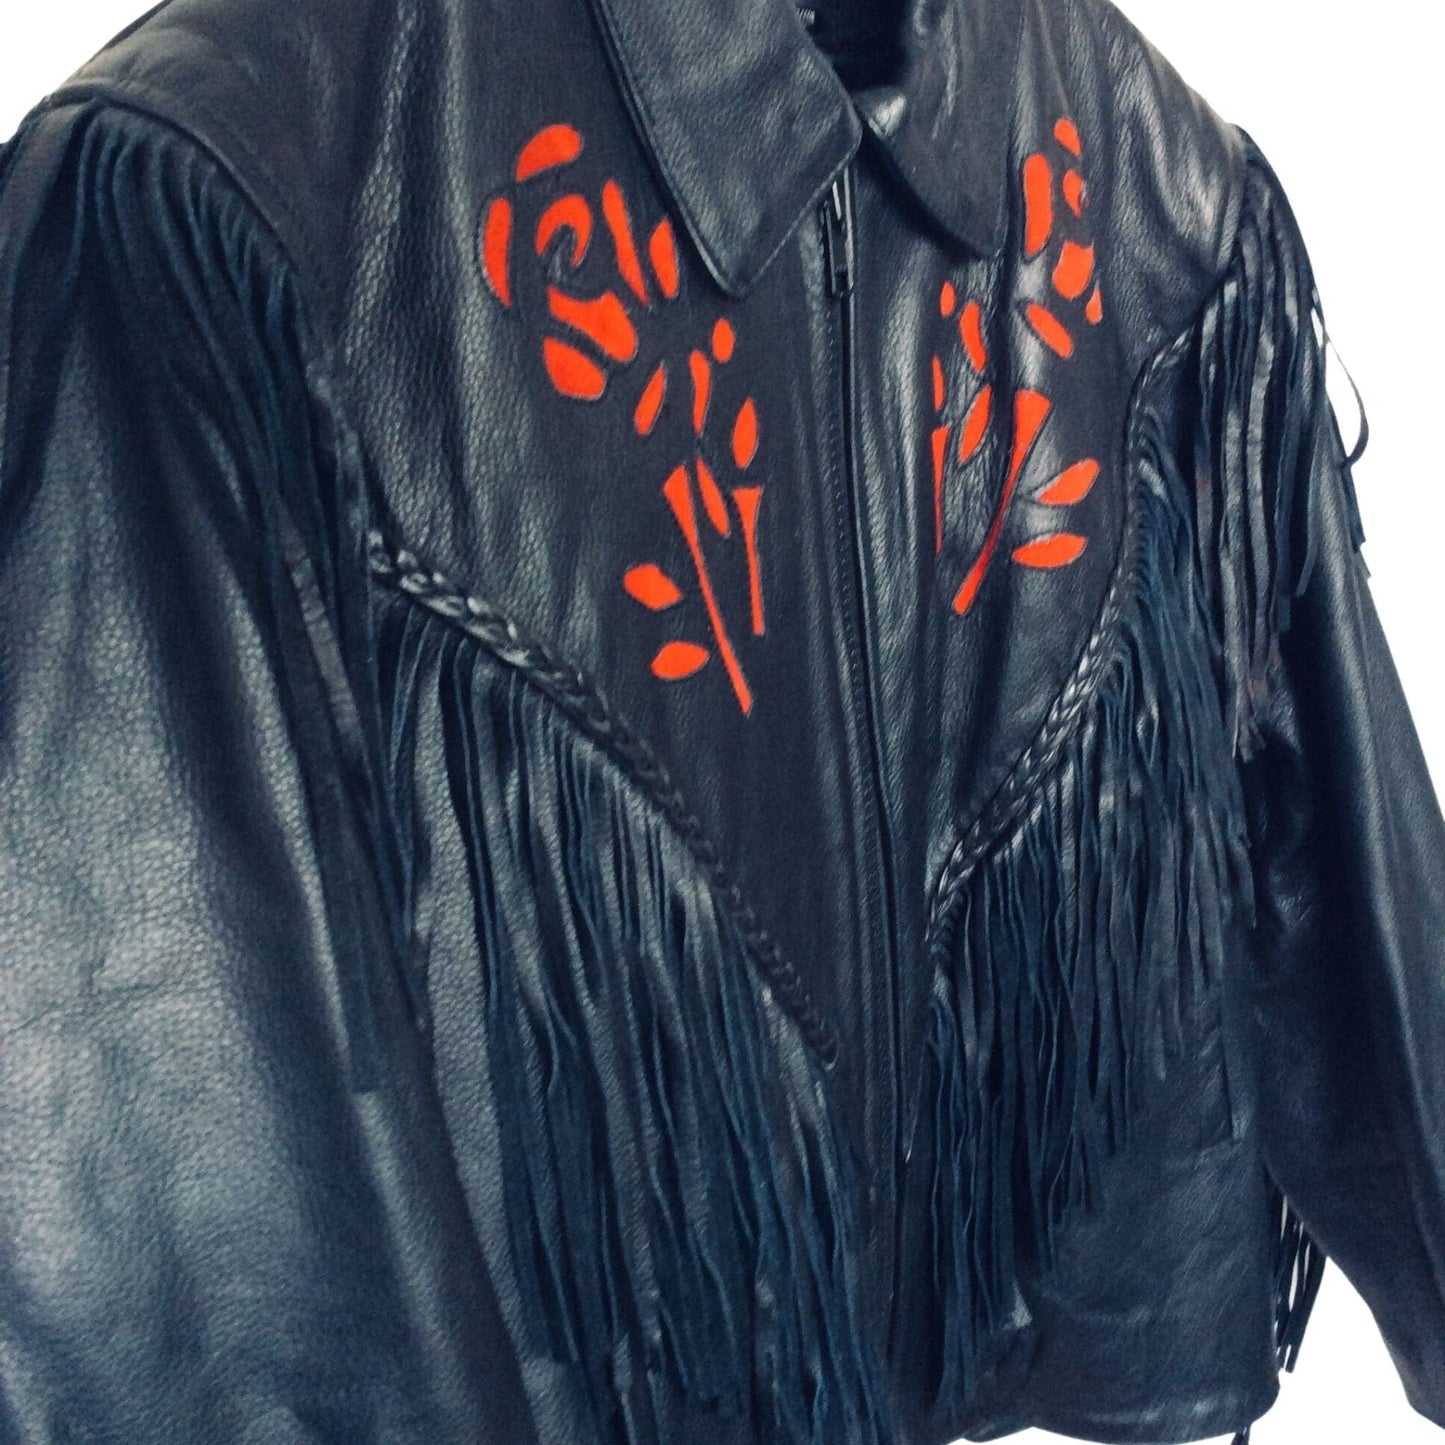 Fringed Leather Jacket Medium / Black / Vintage 1980s